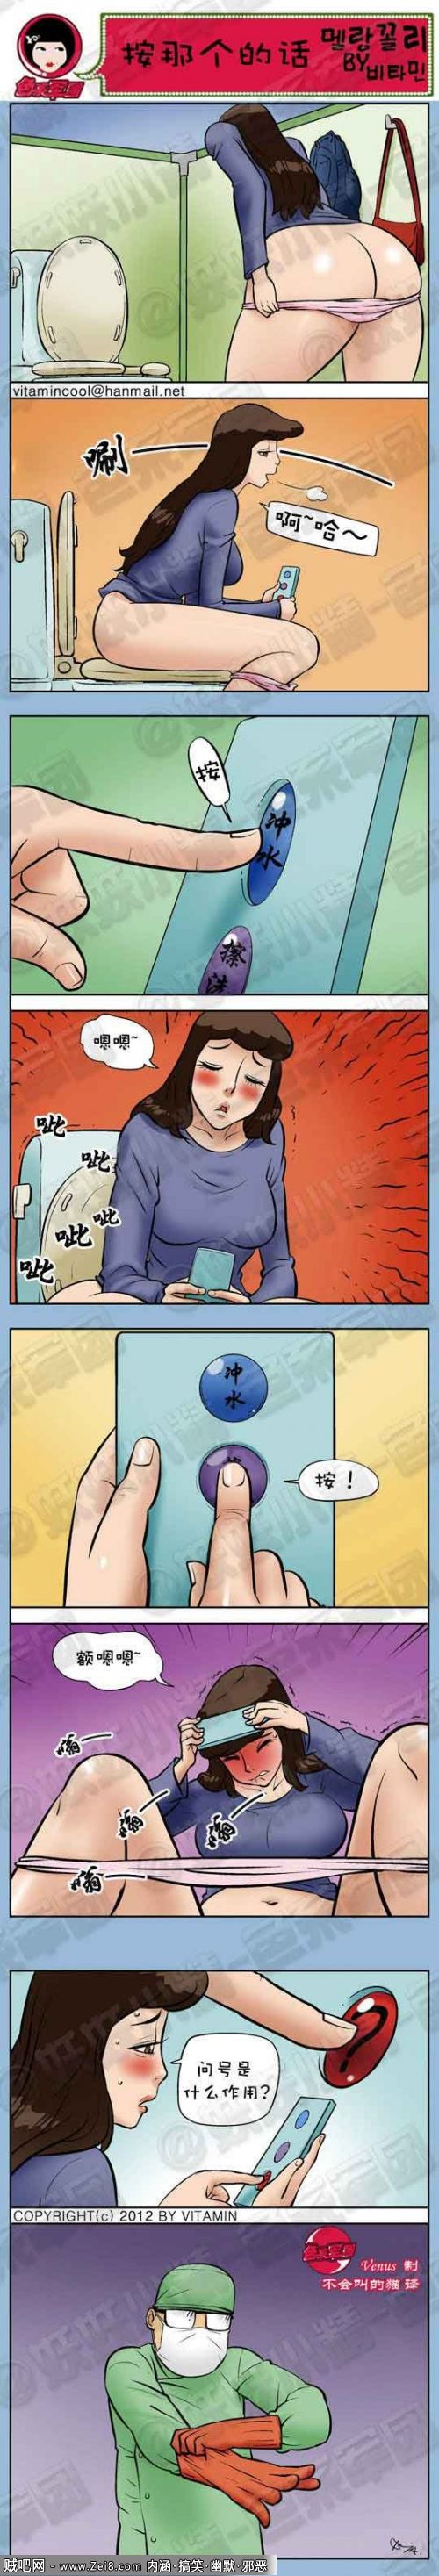 [韩国色系搞笑漫画]：机器意外